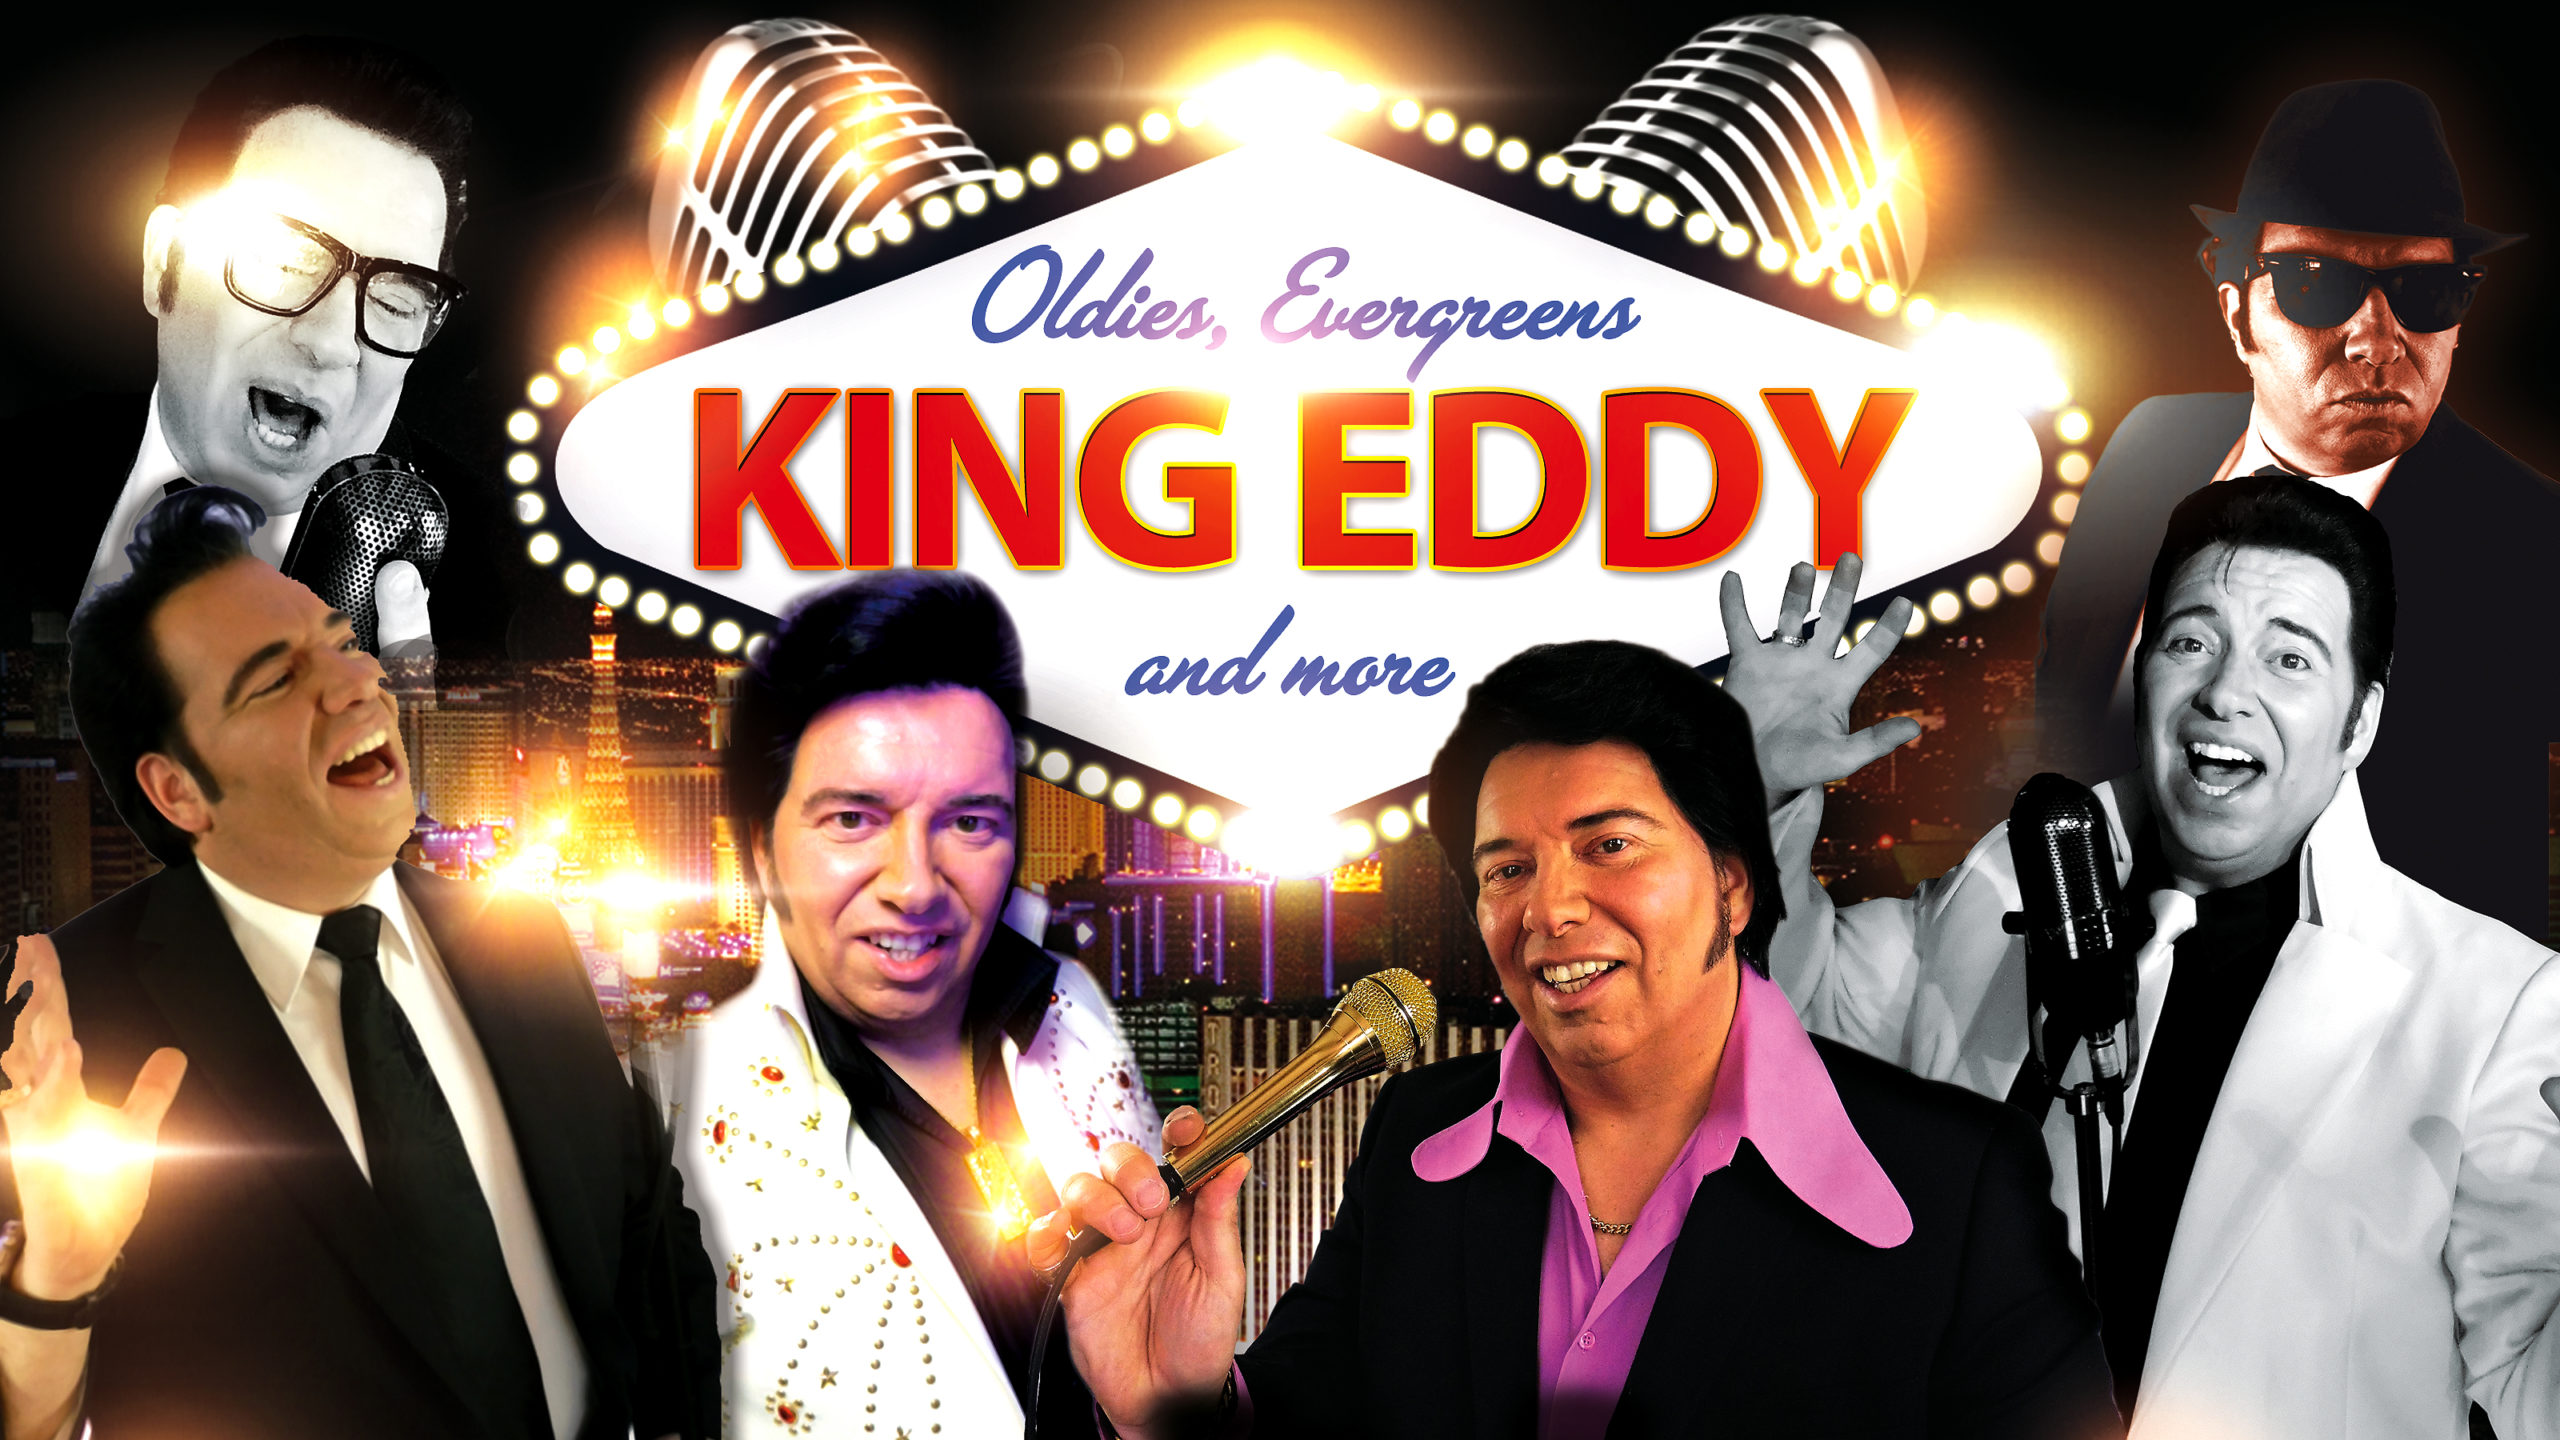 Eddy Ebeling alias King Eddy ist der führende Retro und Oldies Entertainer in Deutschland | Buch und Hörbuch Autor | Musical Darsteller